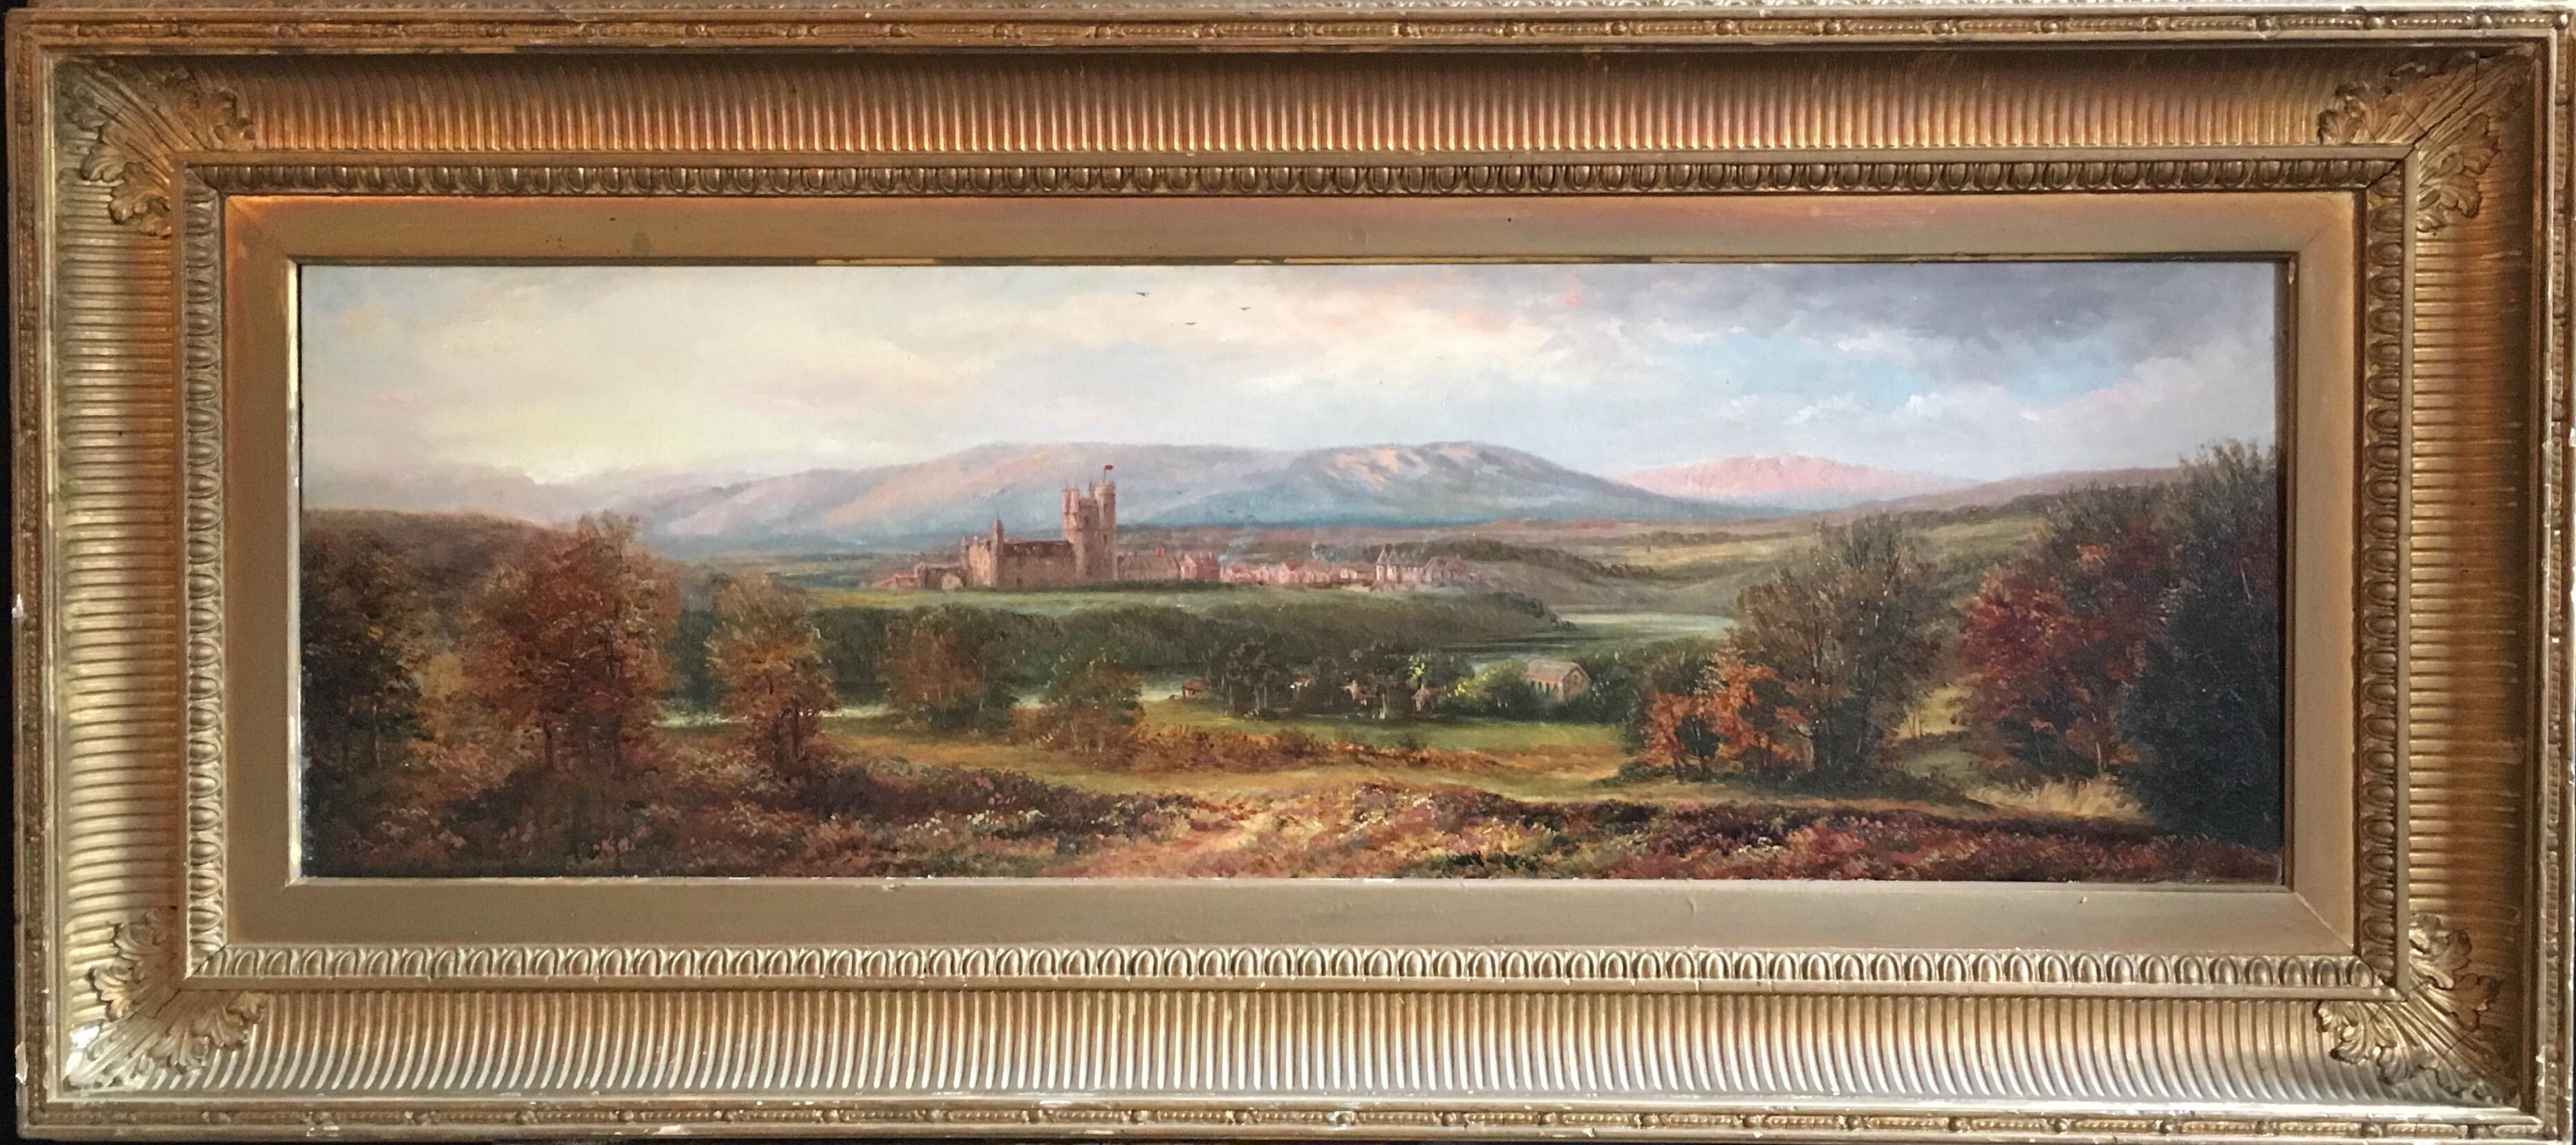 Unknown Landscape Painting - Balmoral Castle, HRH Queen Elizabeth Scottish Residence, Original Frame, Signed